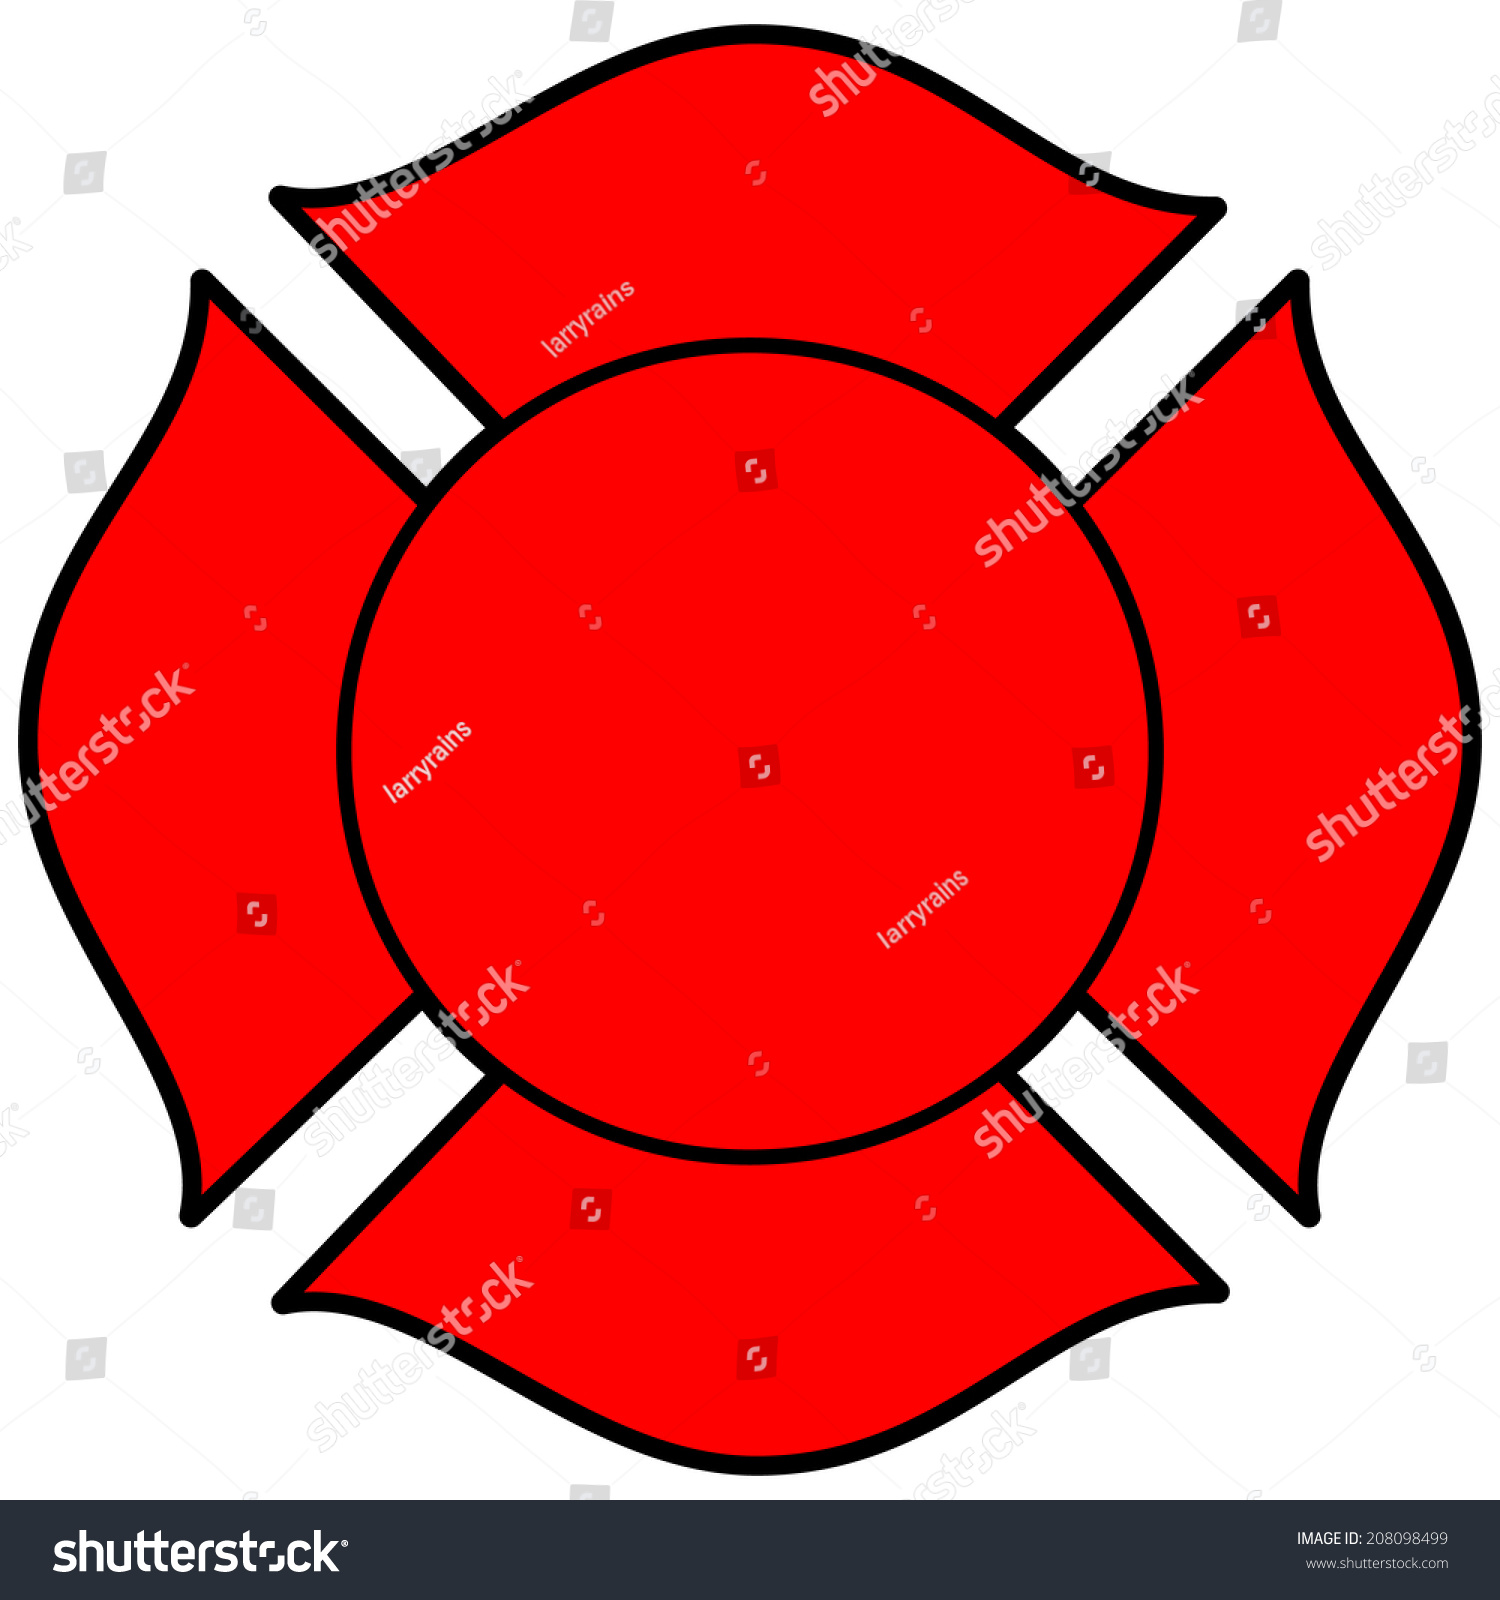 Firefighter Maltese Cross Stock Vector Illustration 208098499 ...